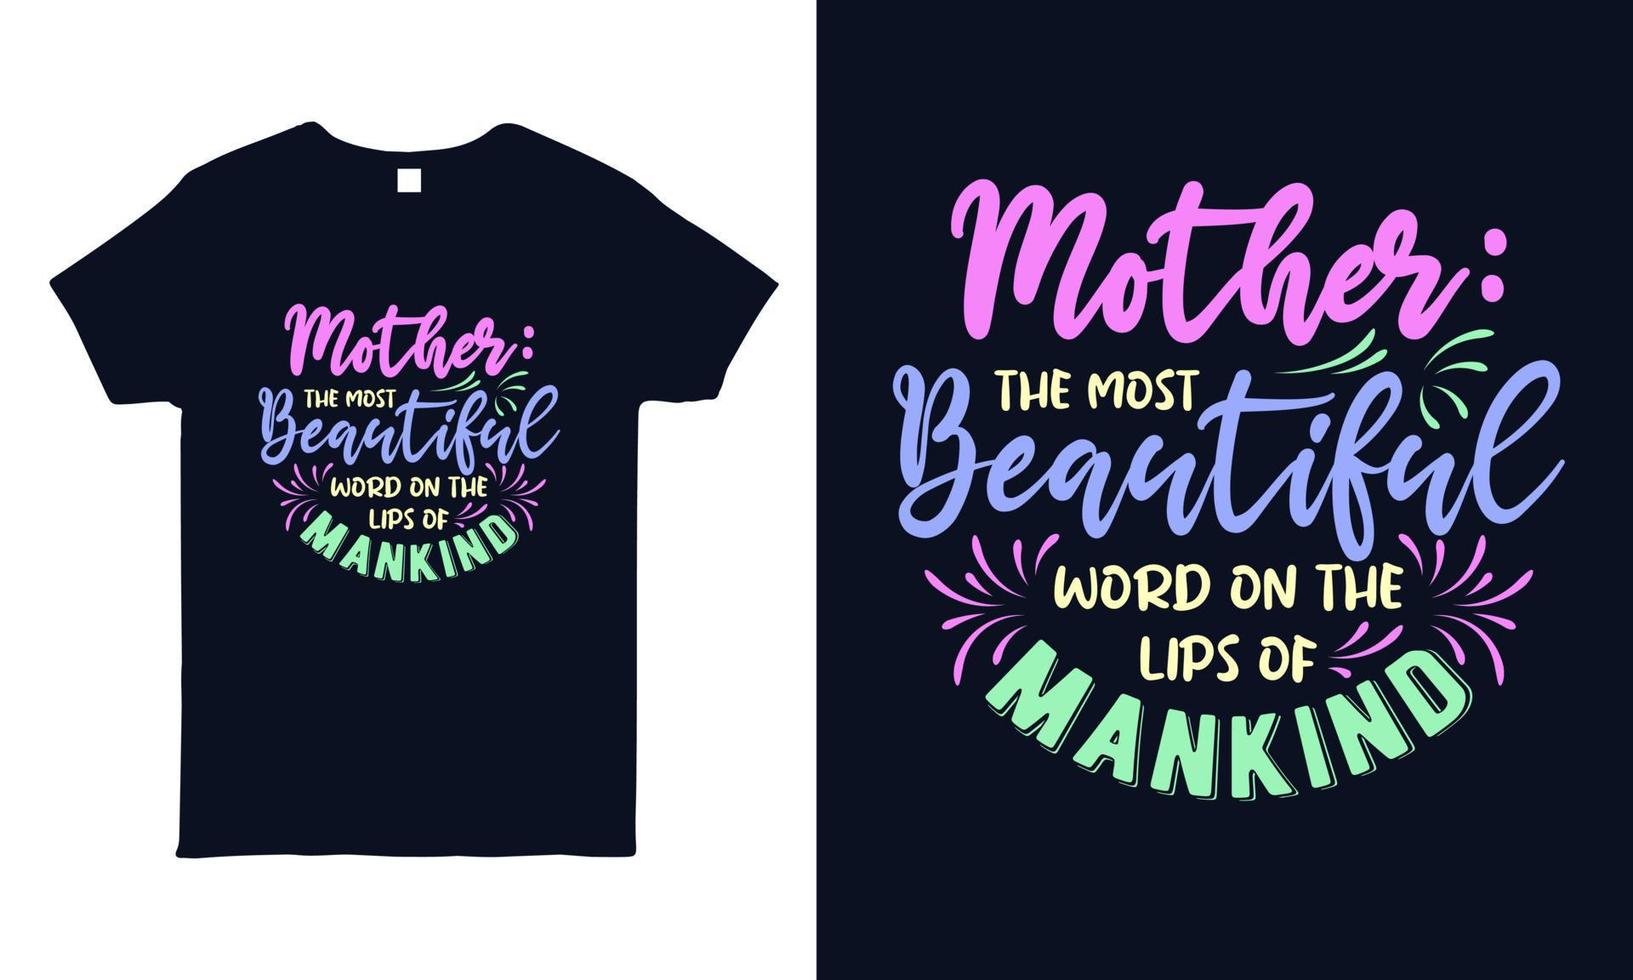 handbelettering citaat over moeder voor t-shirt, mok, sticker, tas afdrukken. moederdag cadeau shirt ontwerp. vector